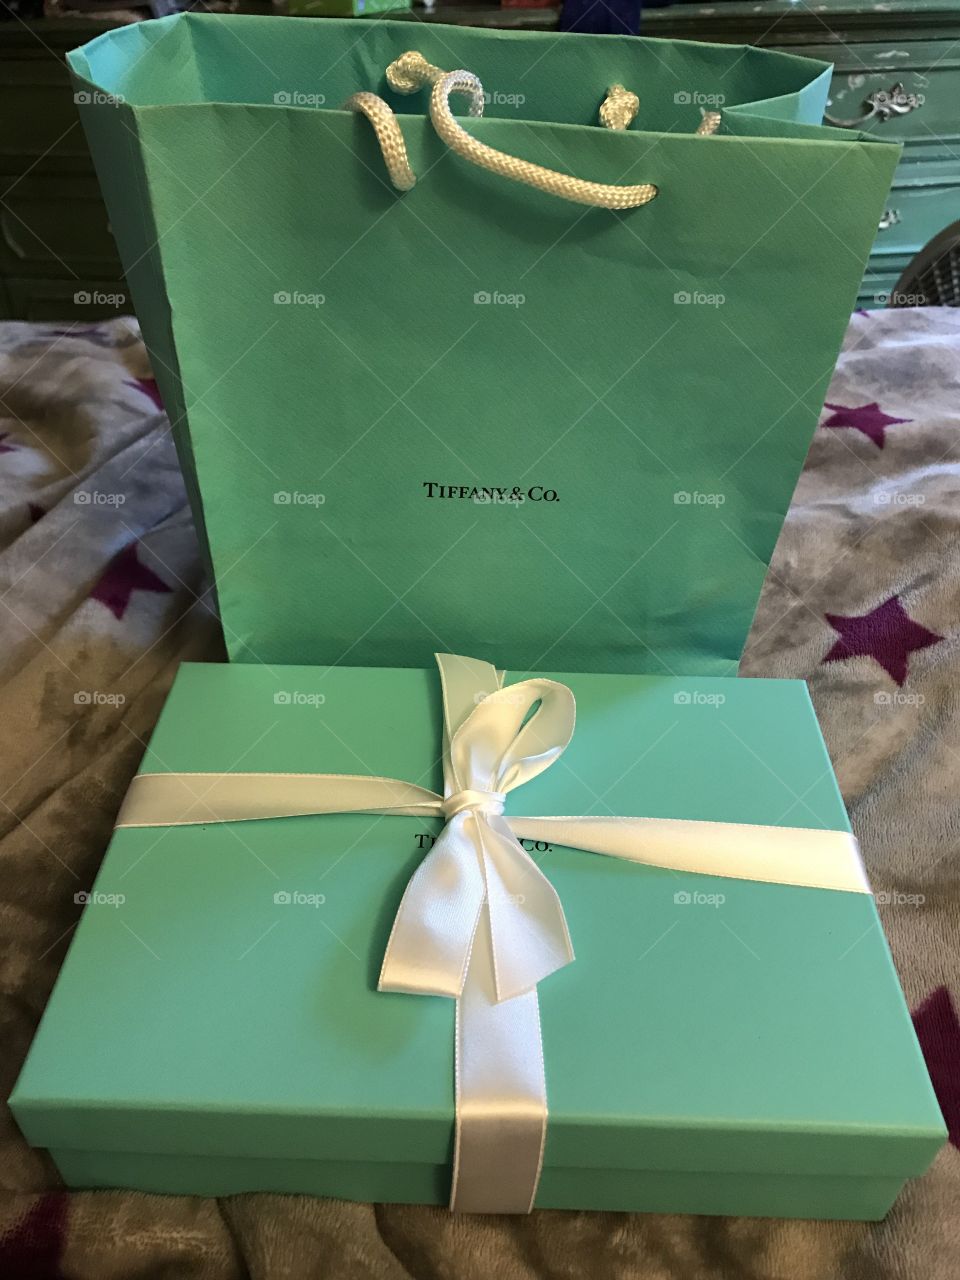 Tiffany’s Blue Box